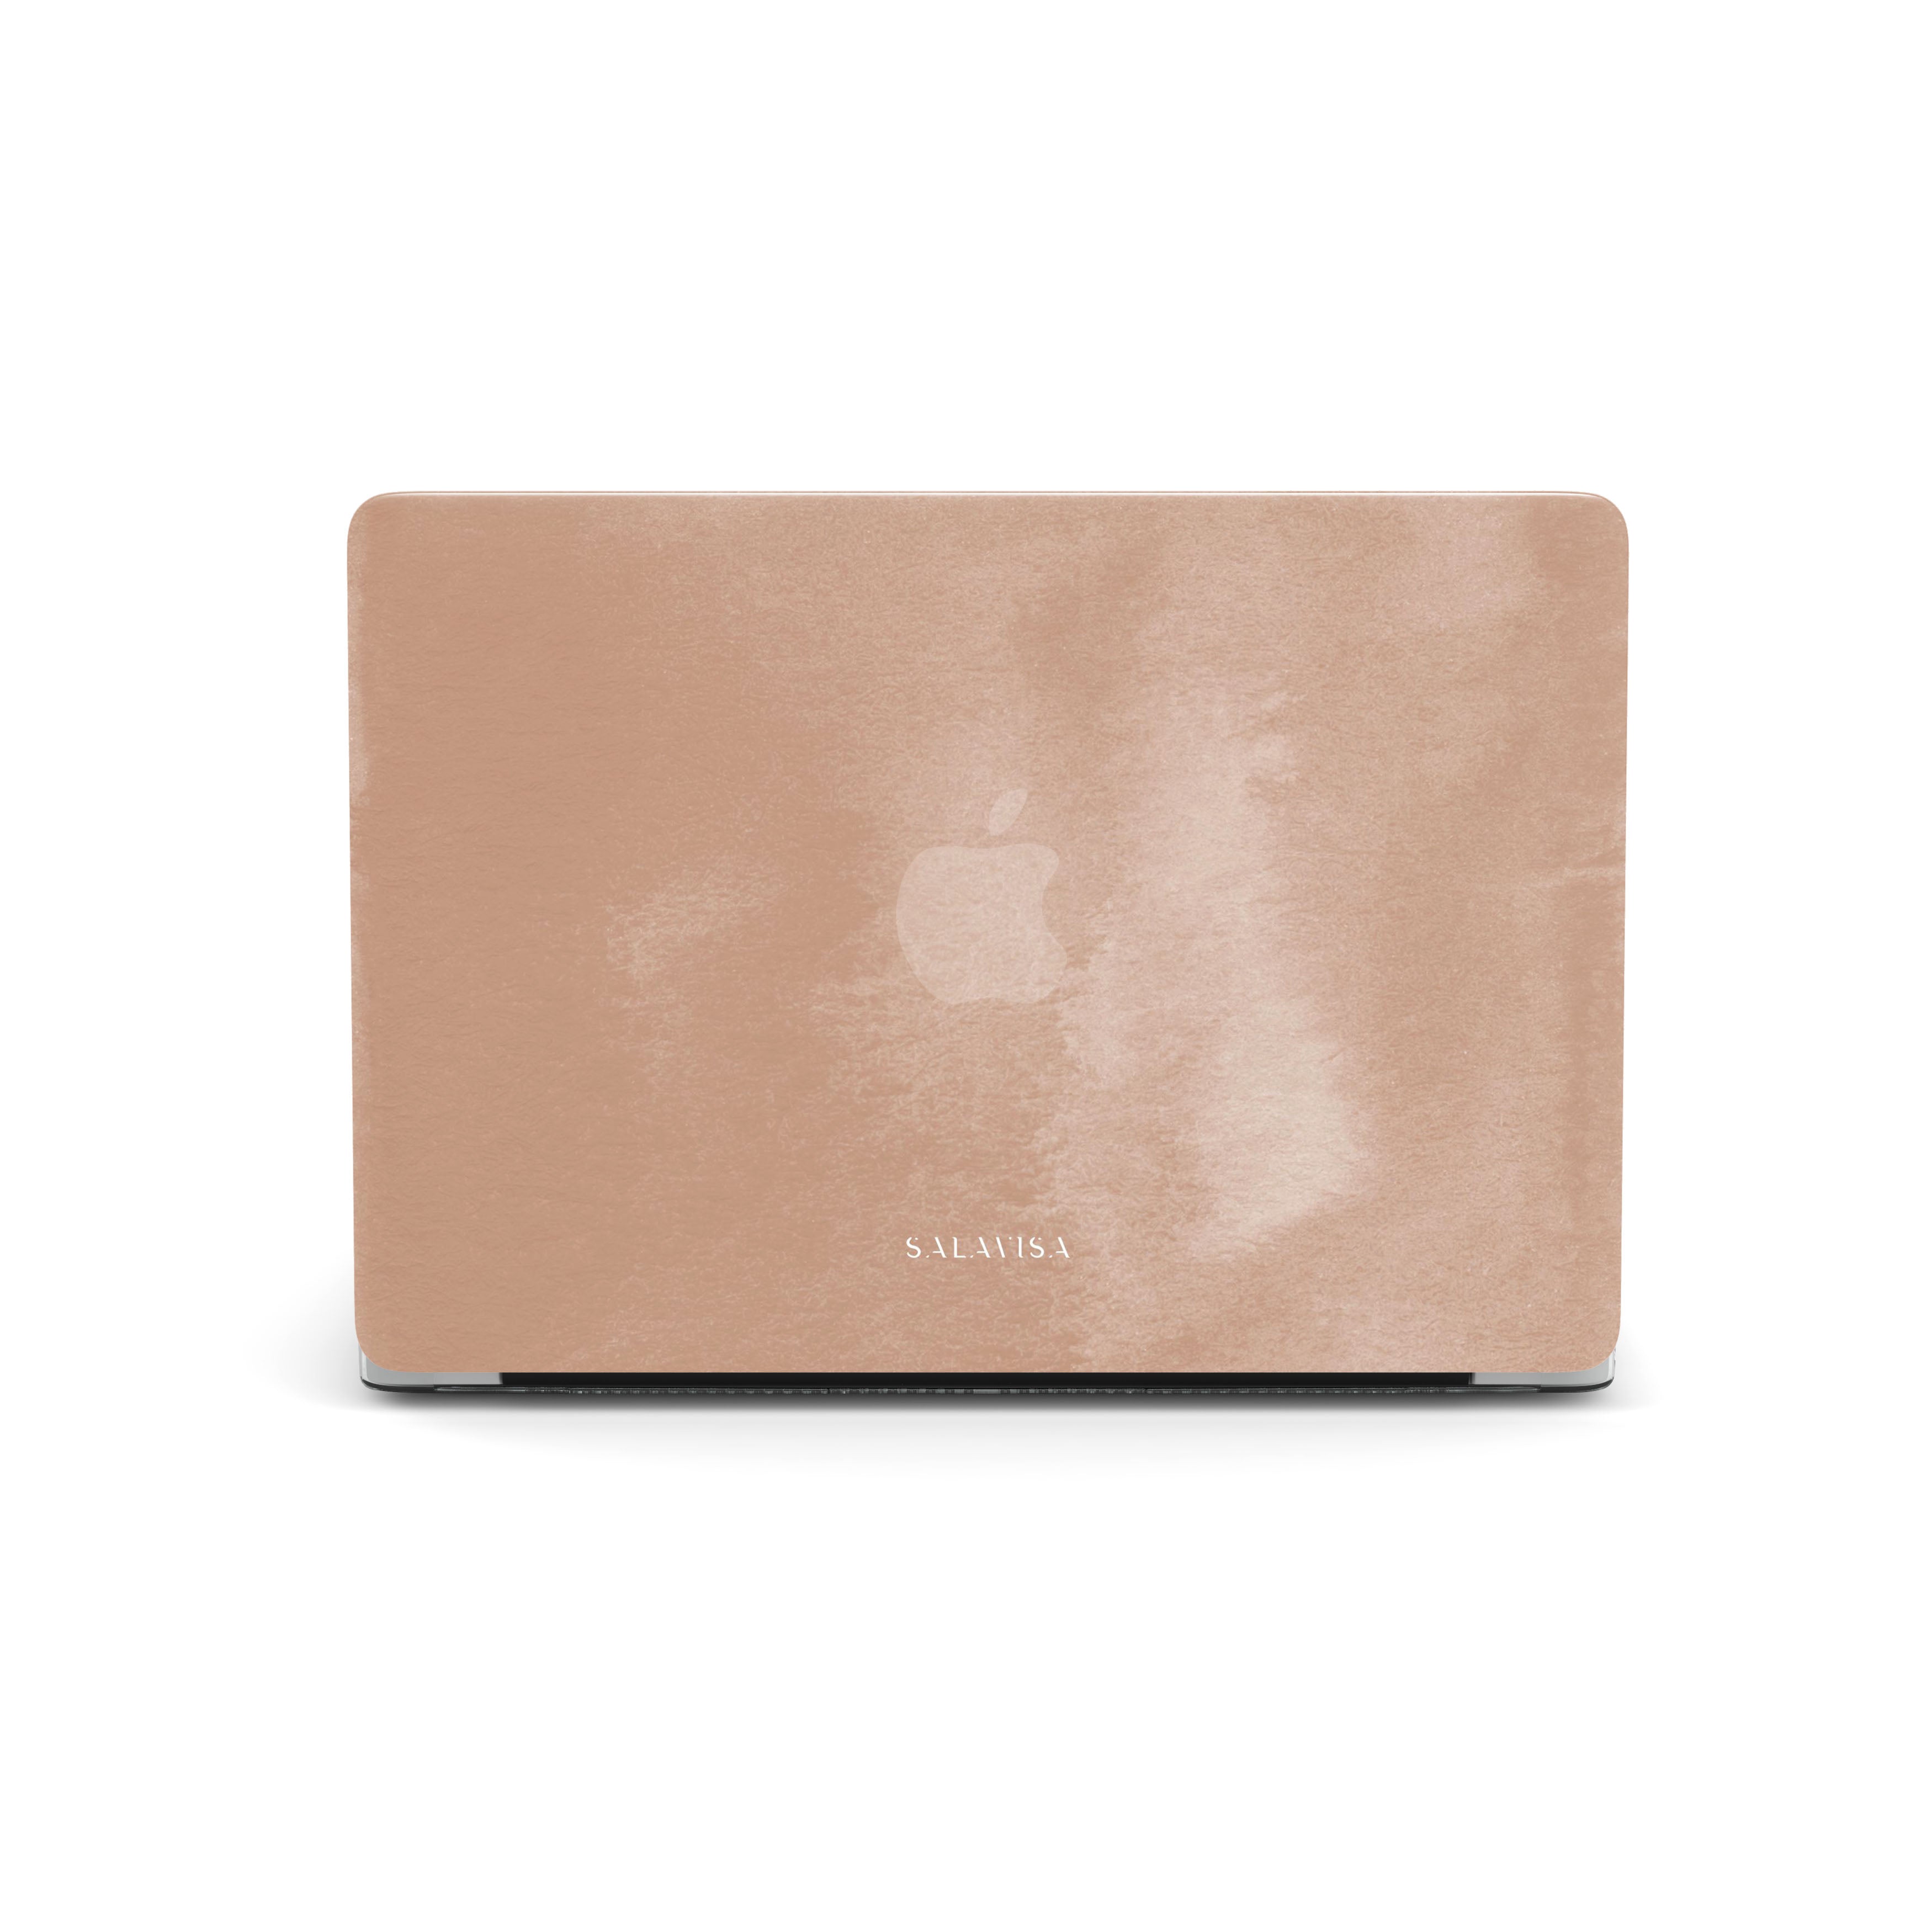 louis vuitton macbook air 13 inch case